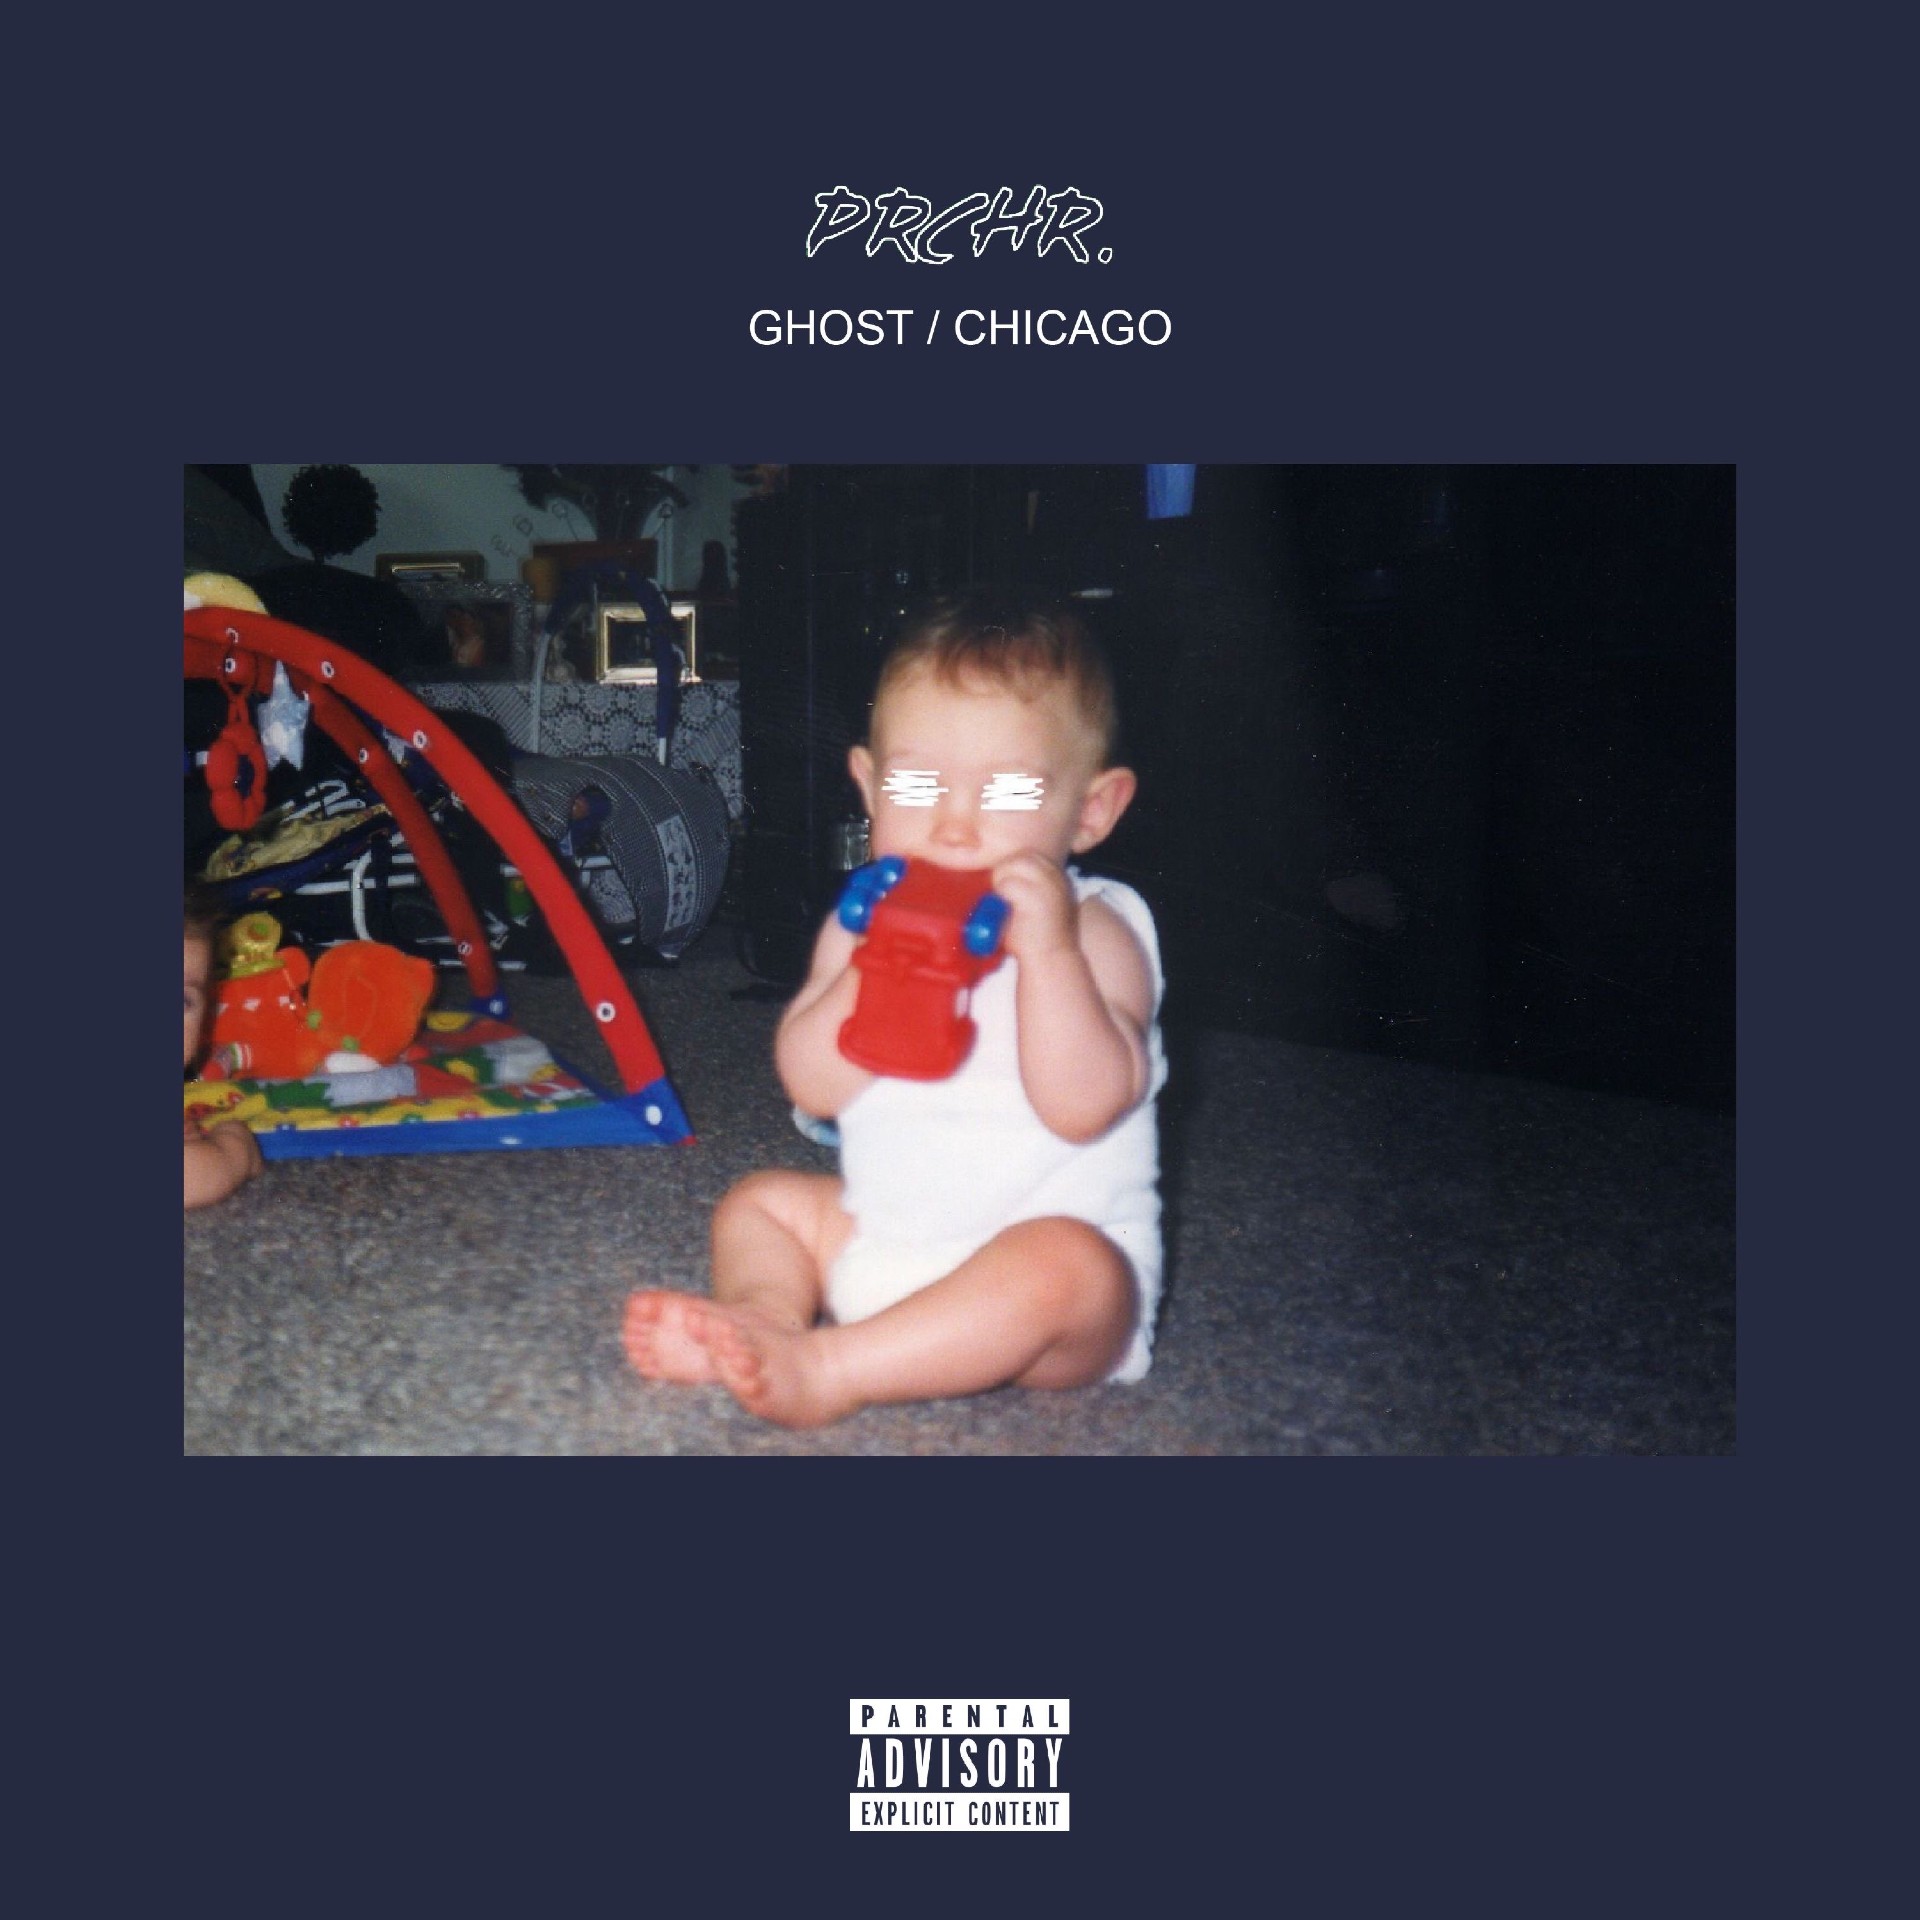 prchr “GHOST / CHICAGO” single artwork